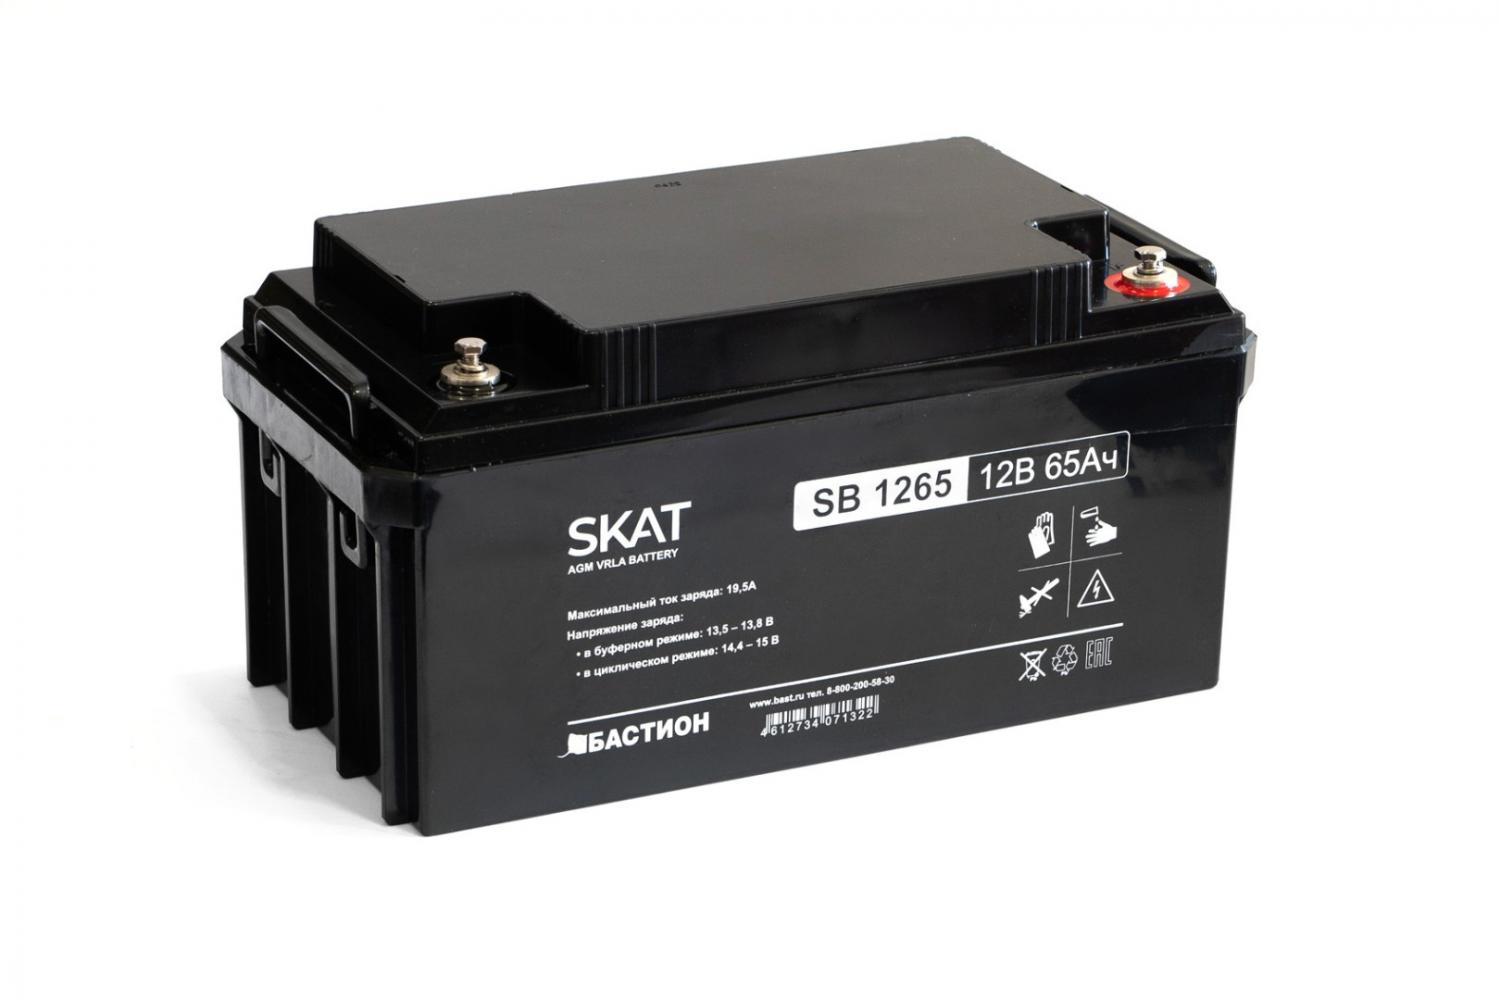 Все Бастион SKAT SB 1265 акб свинцово-кислотная тип agm 12v видеонаблюдения в магазине Vidos Group